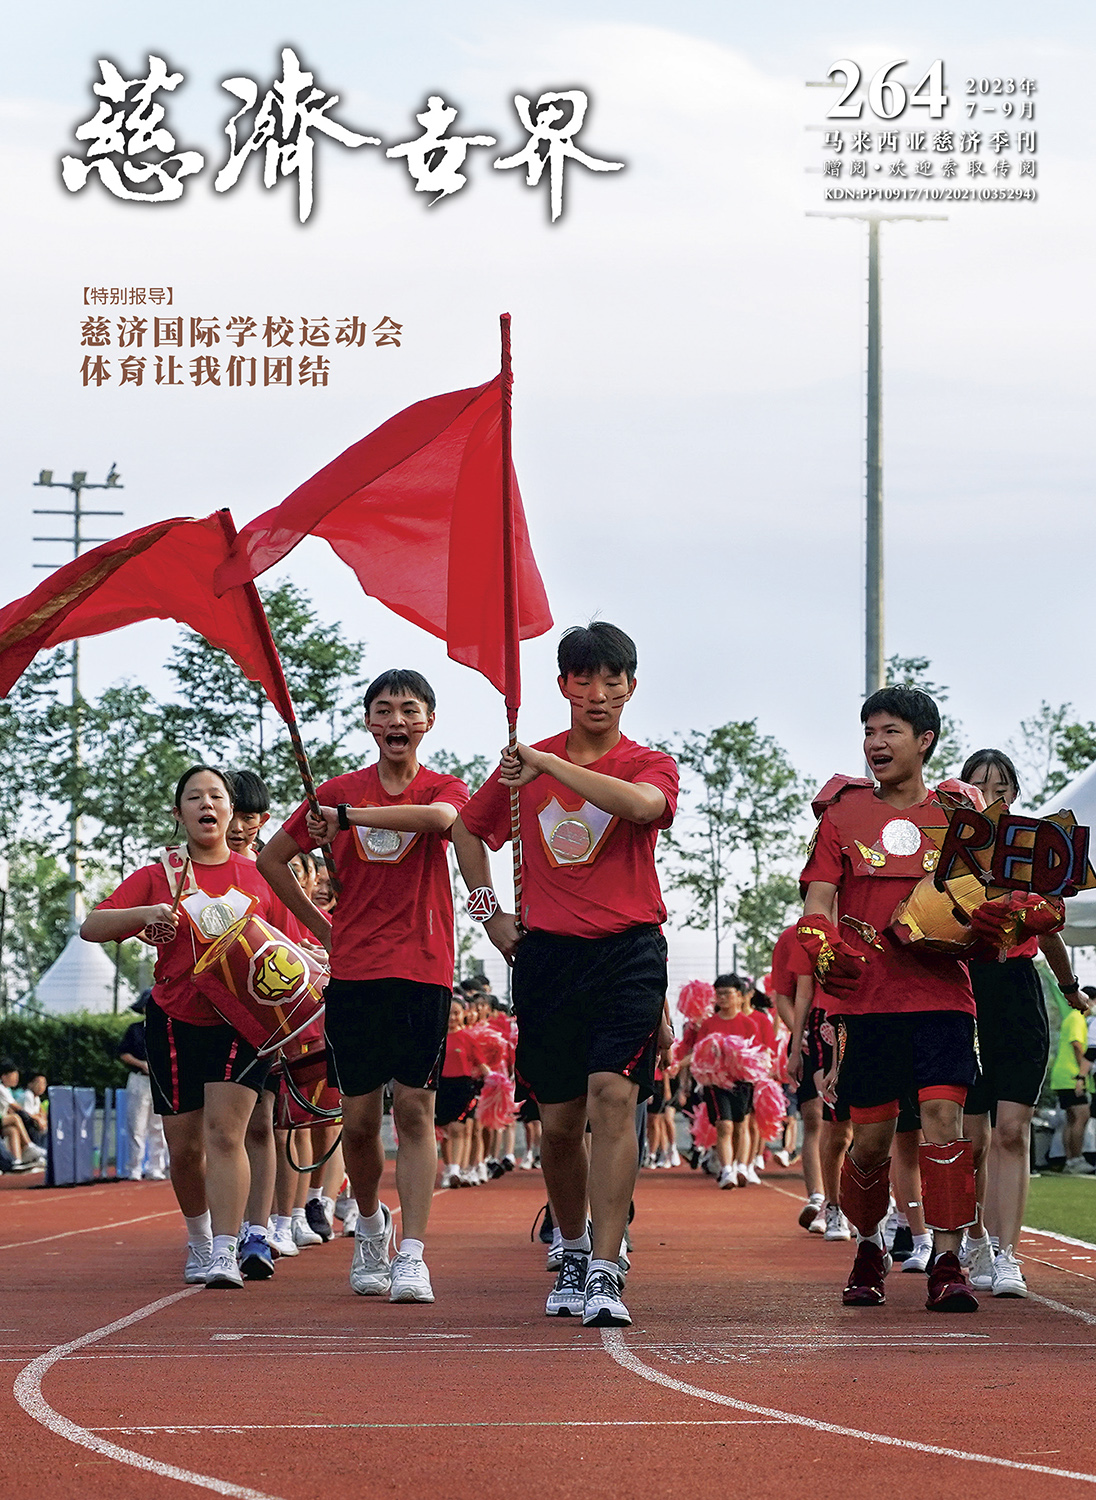 慈济世界第264期-特别报导<br> 慈济国际学校运动会 <br> 体育让我们团结